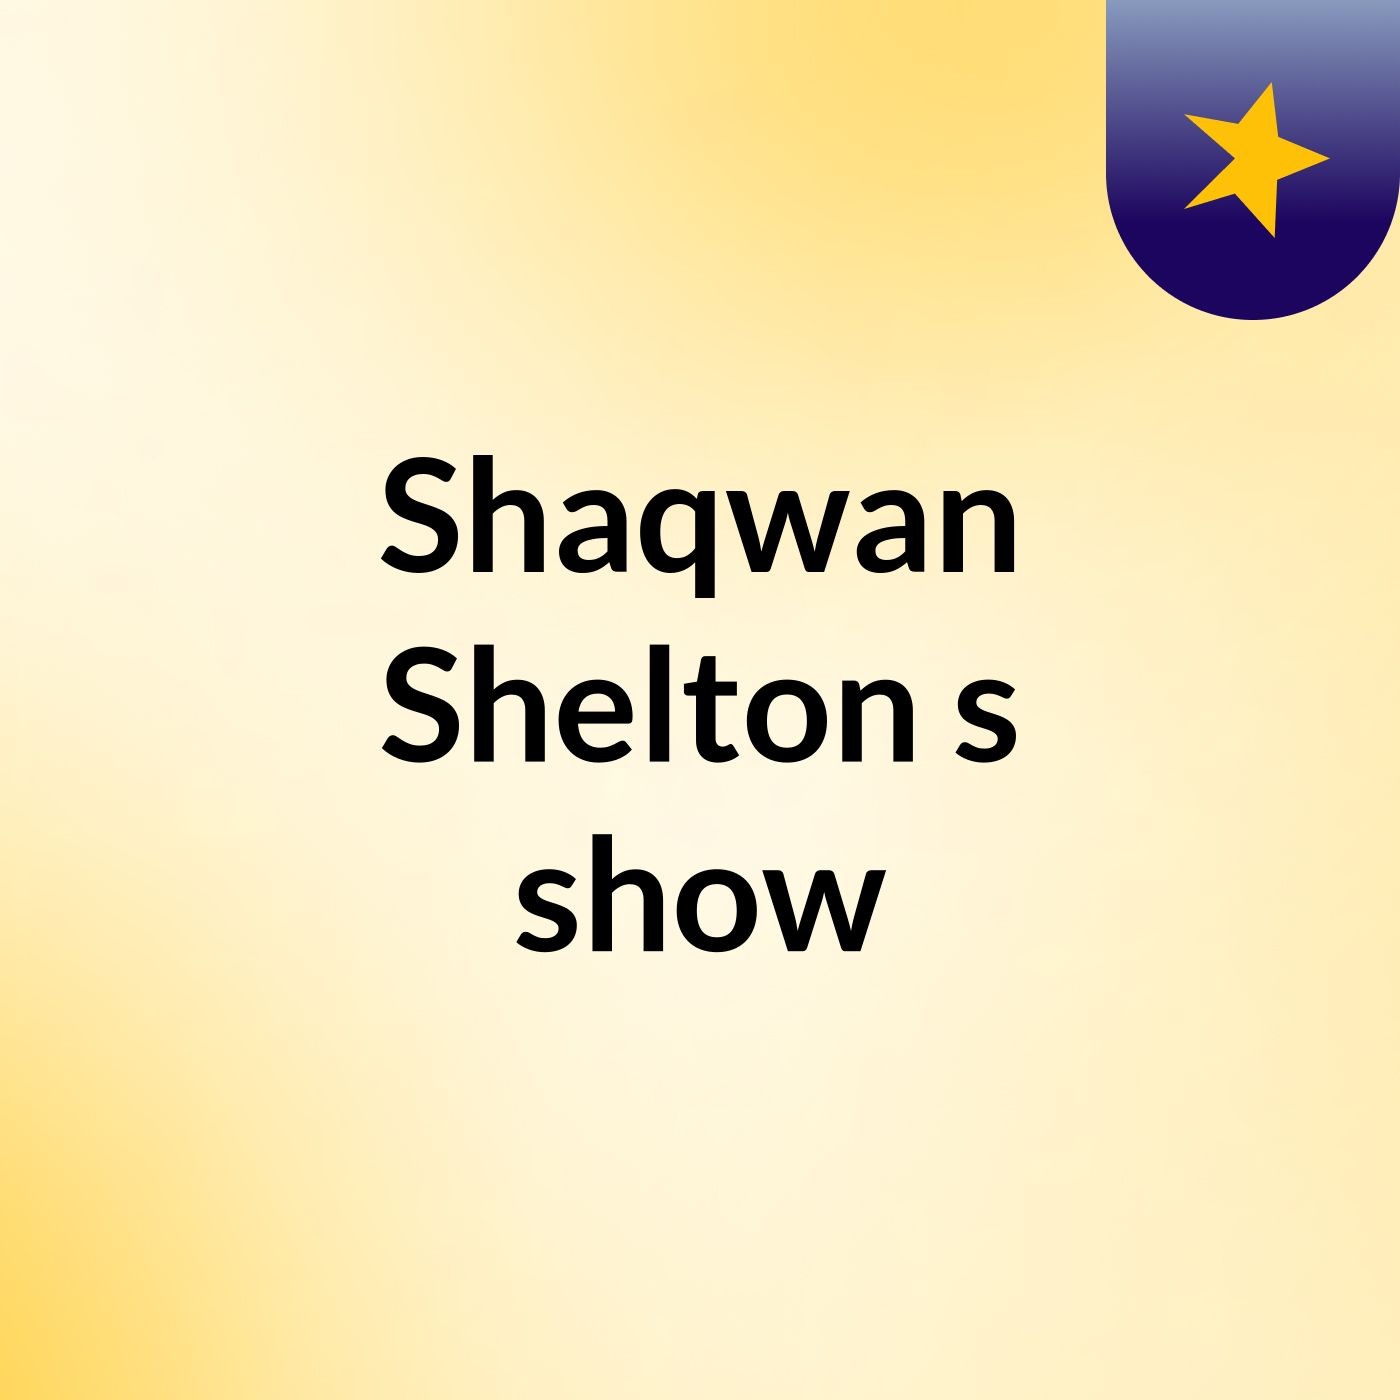 Shaqwan Shelton's show